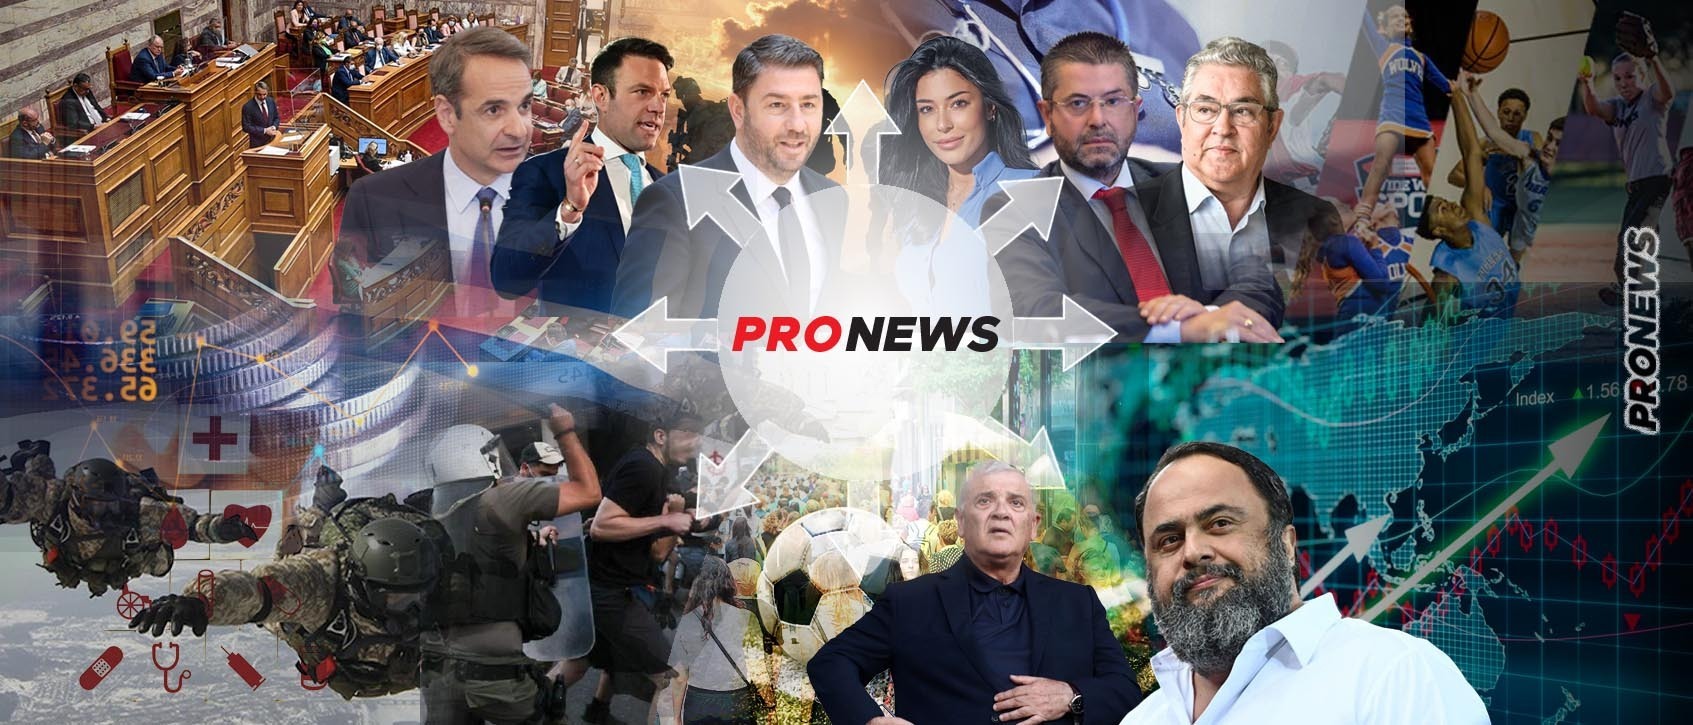 Κυριαρχία pronews.gr στην ελληνική ενημέρωση: 1 στους 3 Έλληνες βλέπει, ακούει και διαβάζει καθημερινά τις πλατφόρμες του pronews.gr (upd)